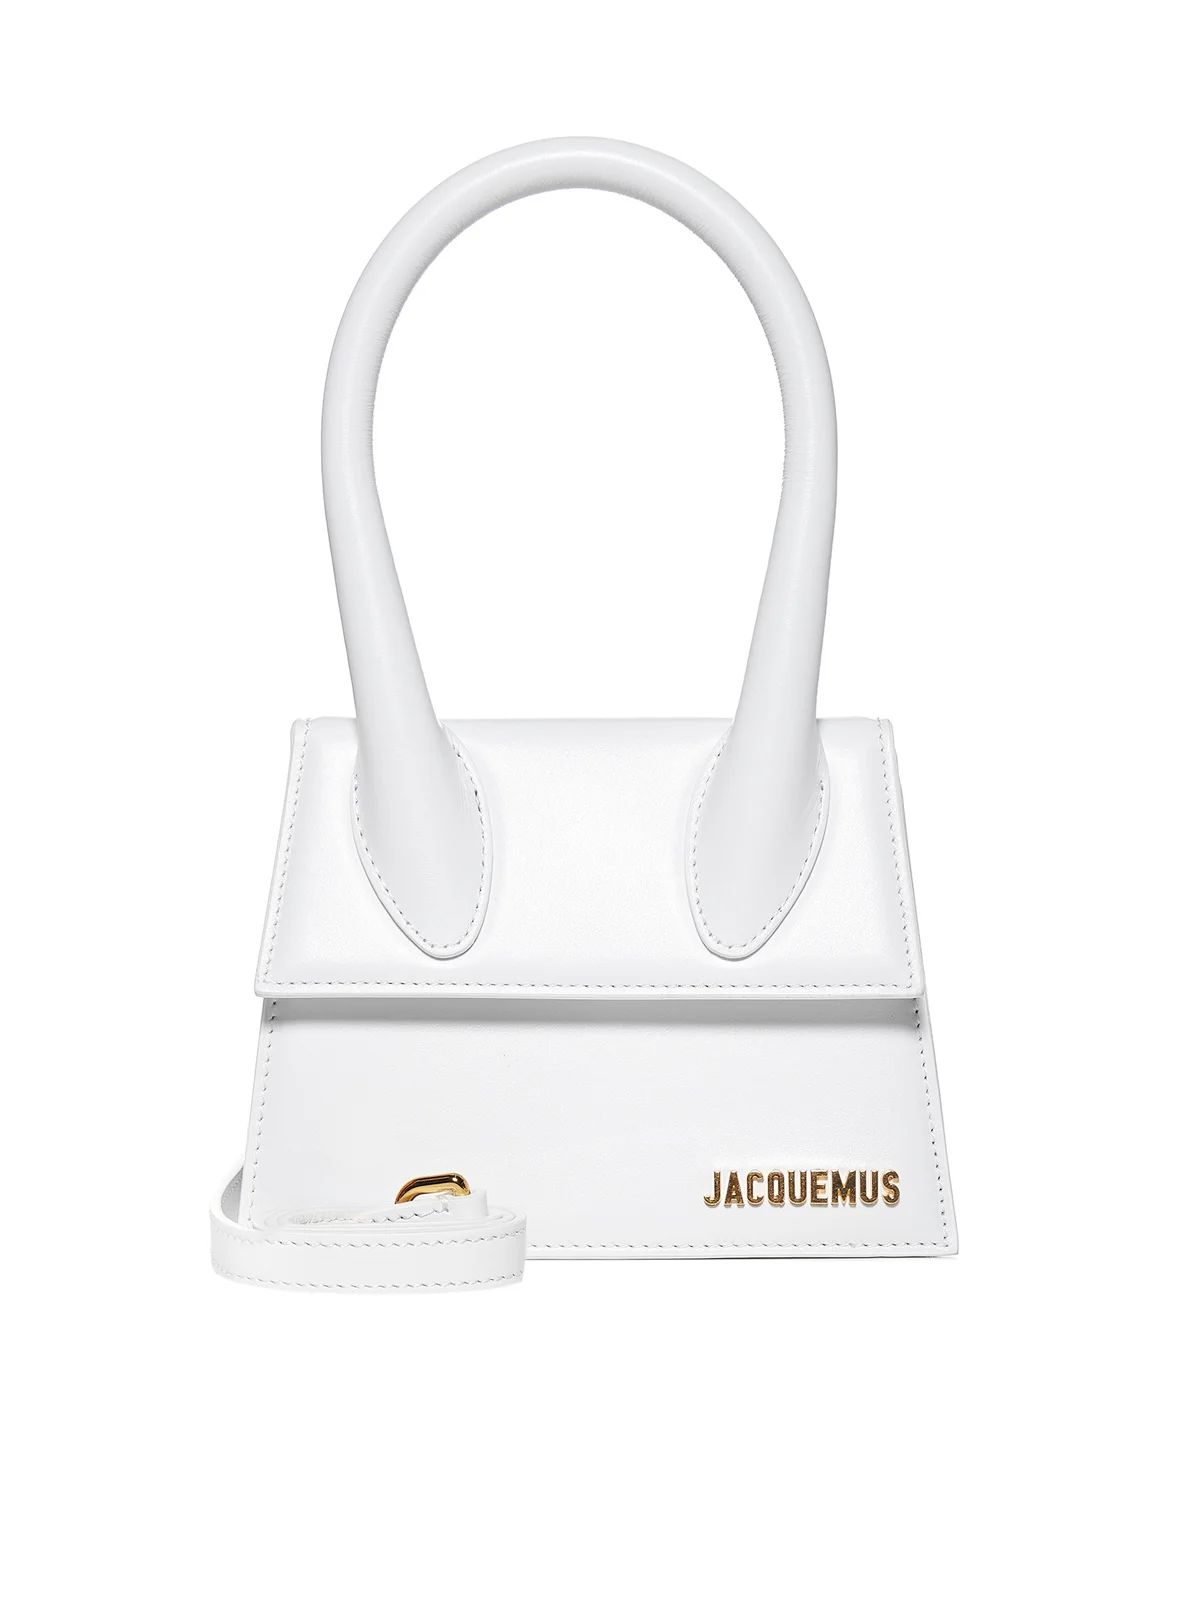 Jacquemus Le Chiquito Moyen Shoulder Bag | Cettire Global